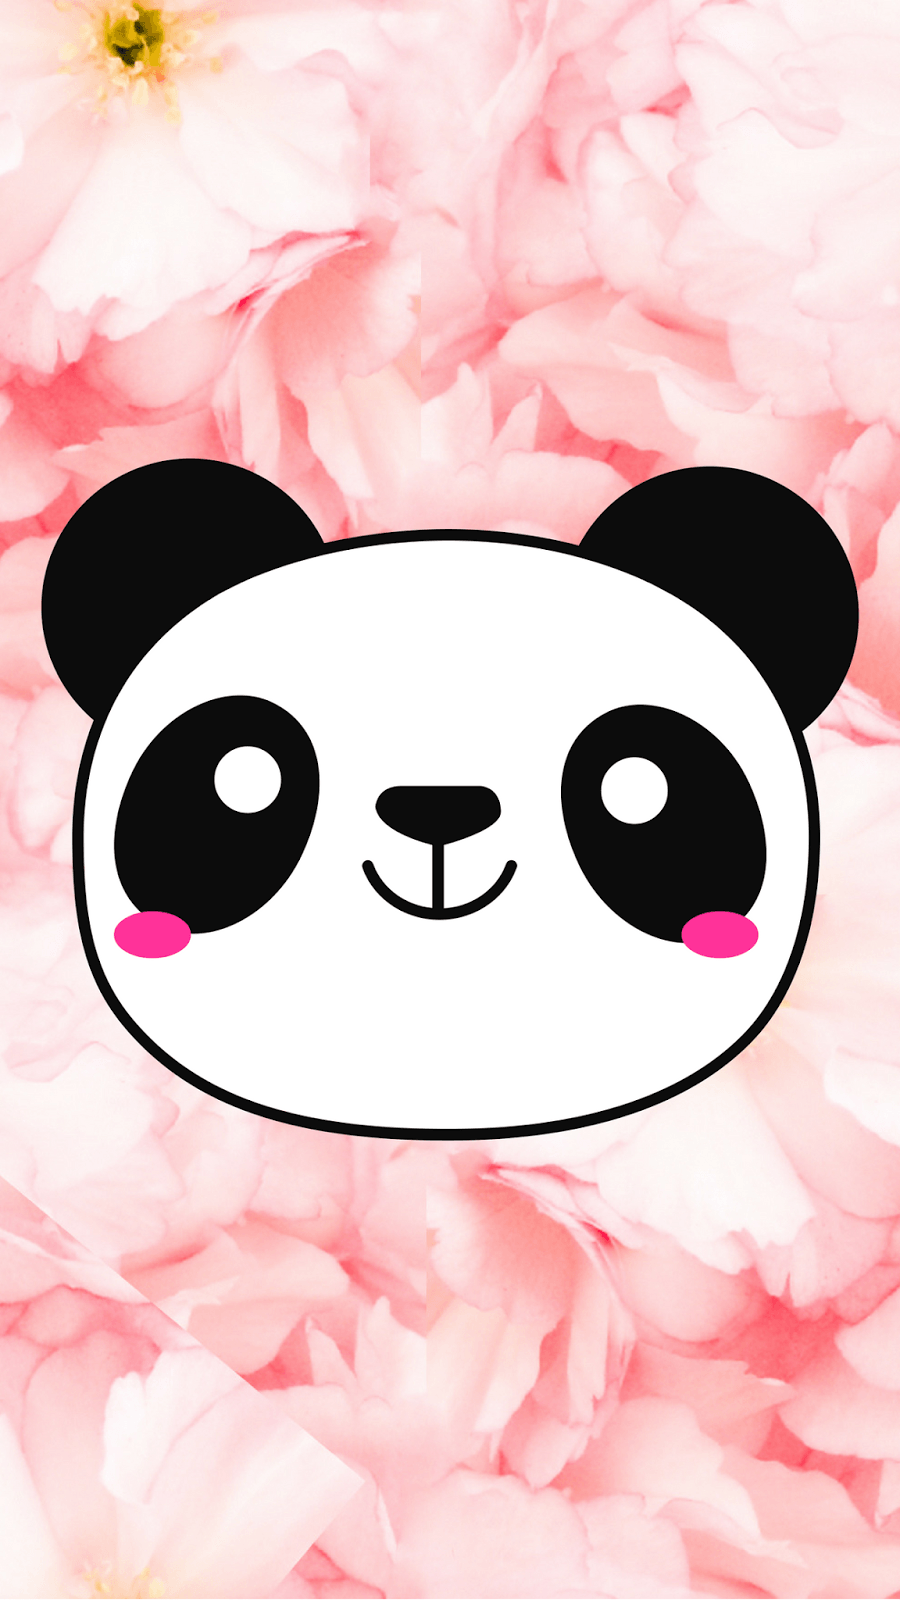 Free cute Panda wallpaper!. i blog about stuff xo